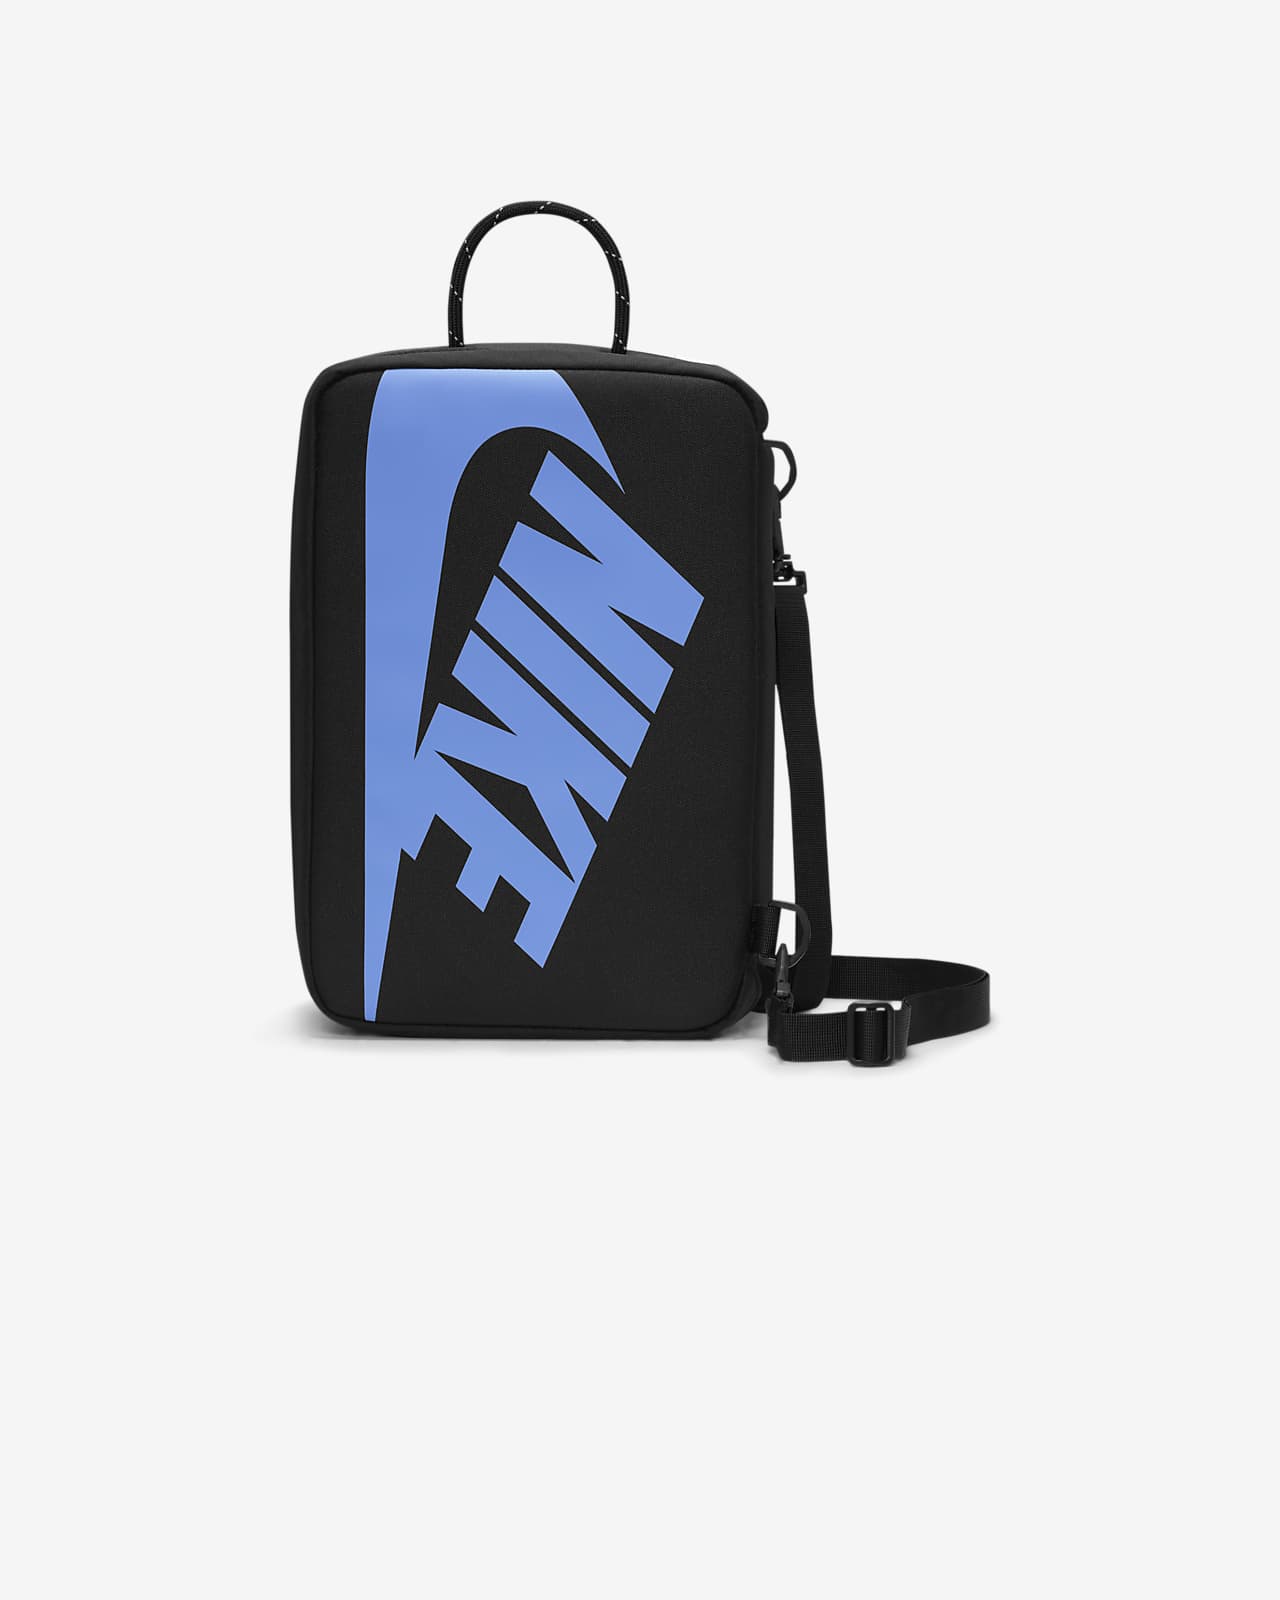 Nike Shoe Box Bag (12L).